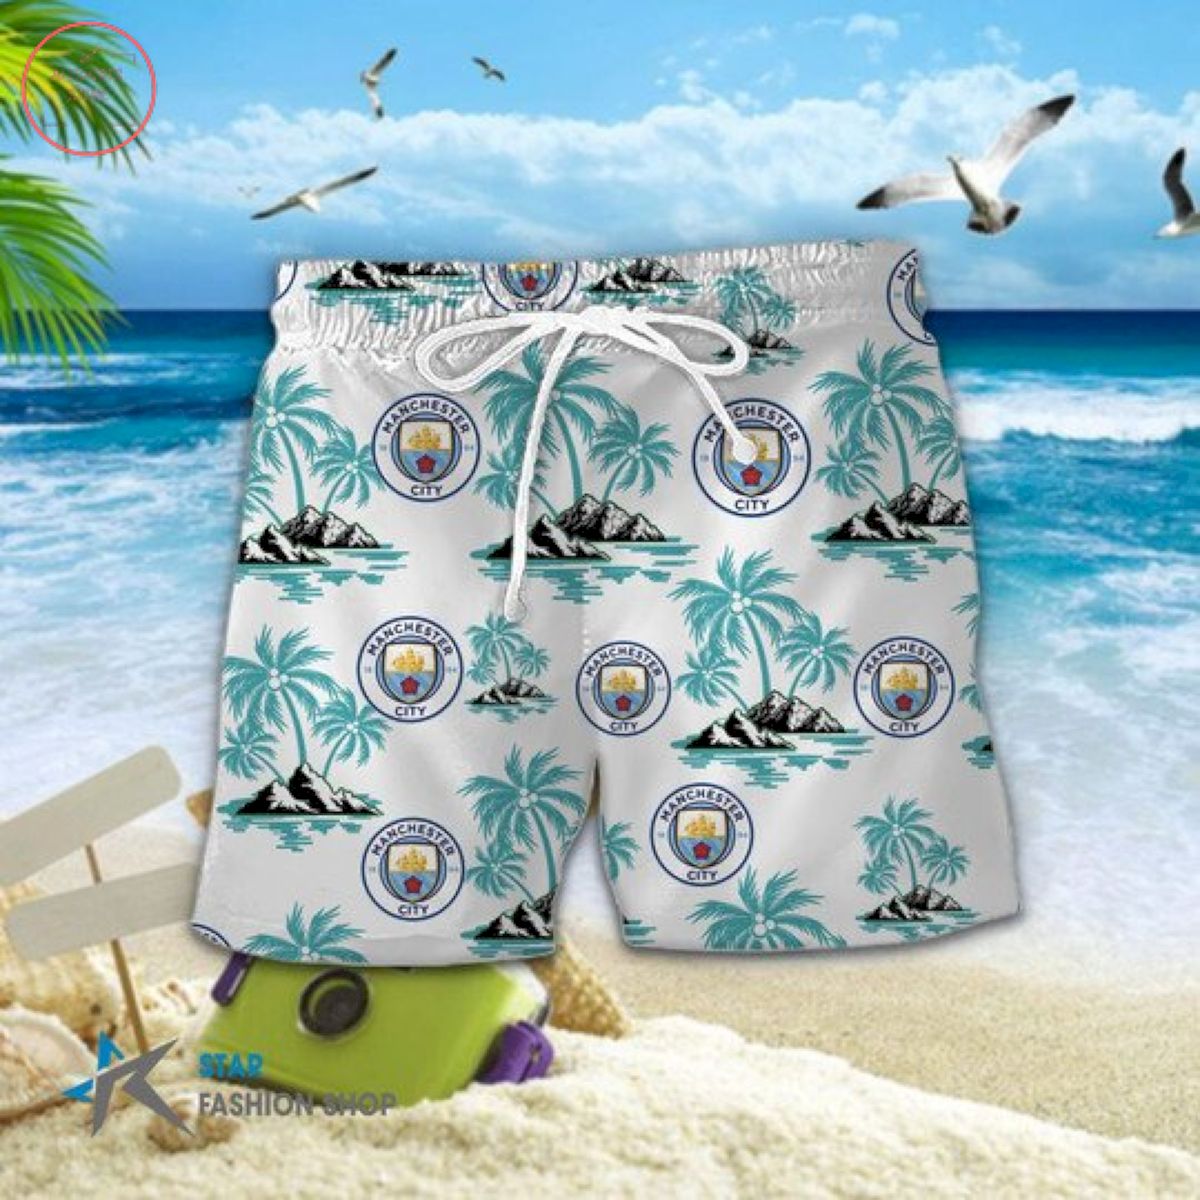 EPL Manchester City Floral Hawaiian Shirts and Shorts